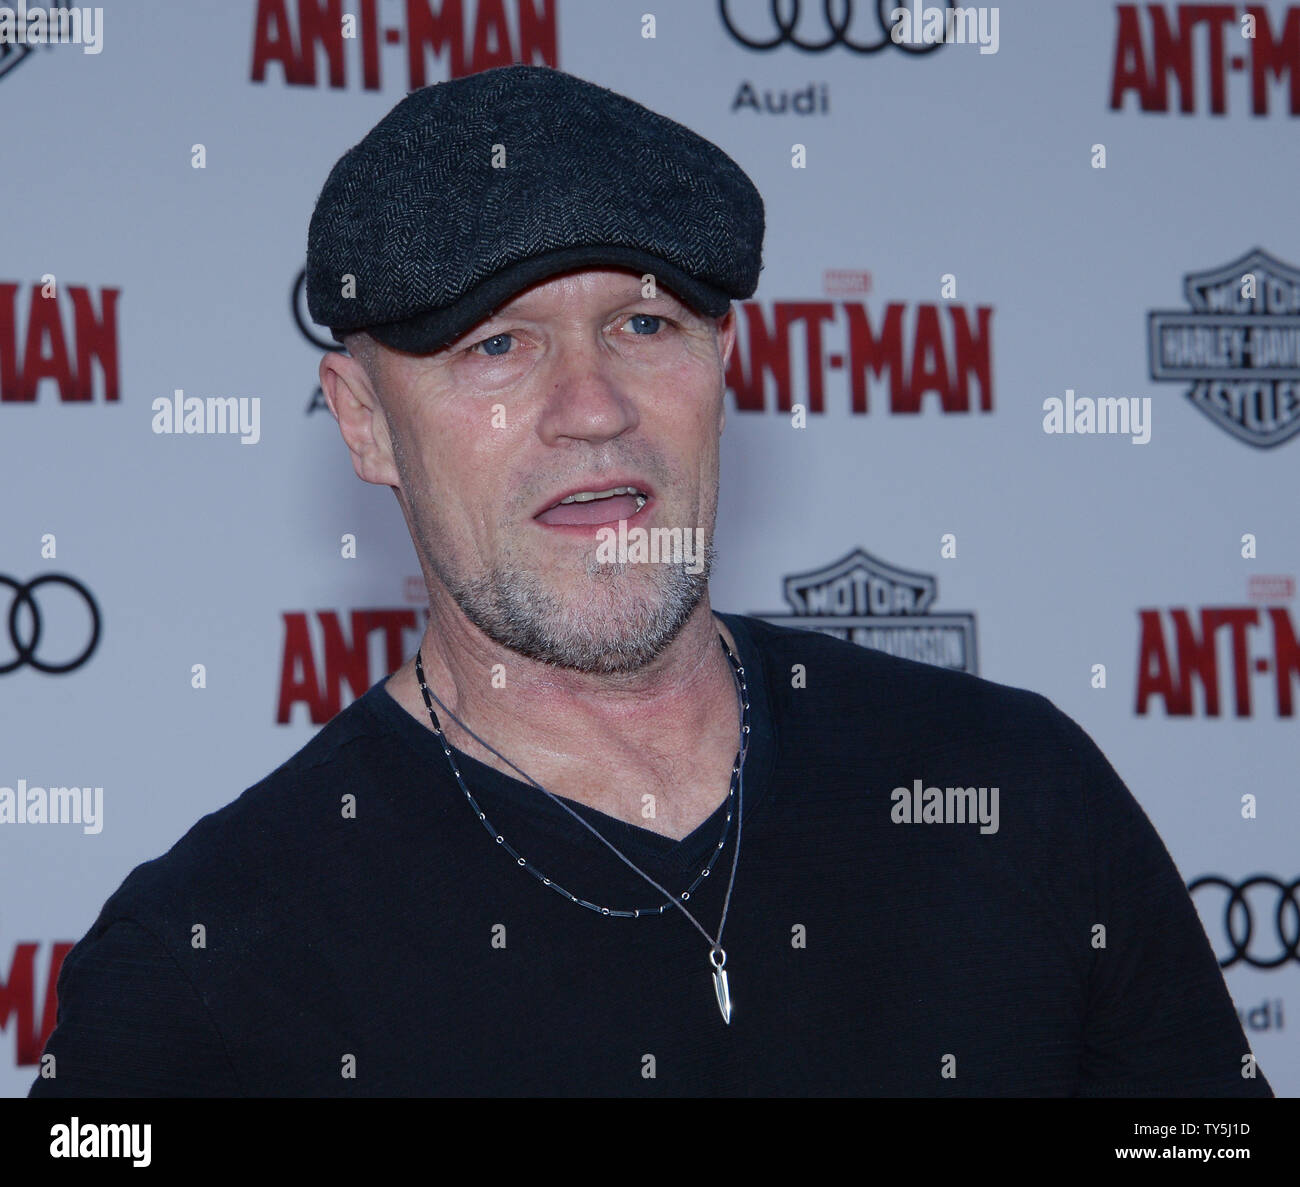 L'acteur Michael Rooker assiste à la première de the motion picture sci-fi  'Ant-Man' au Kodak Theater dans la section Hollywood de Los Angeles le 29  juin 2015. Scénario : armé d'un super-suit